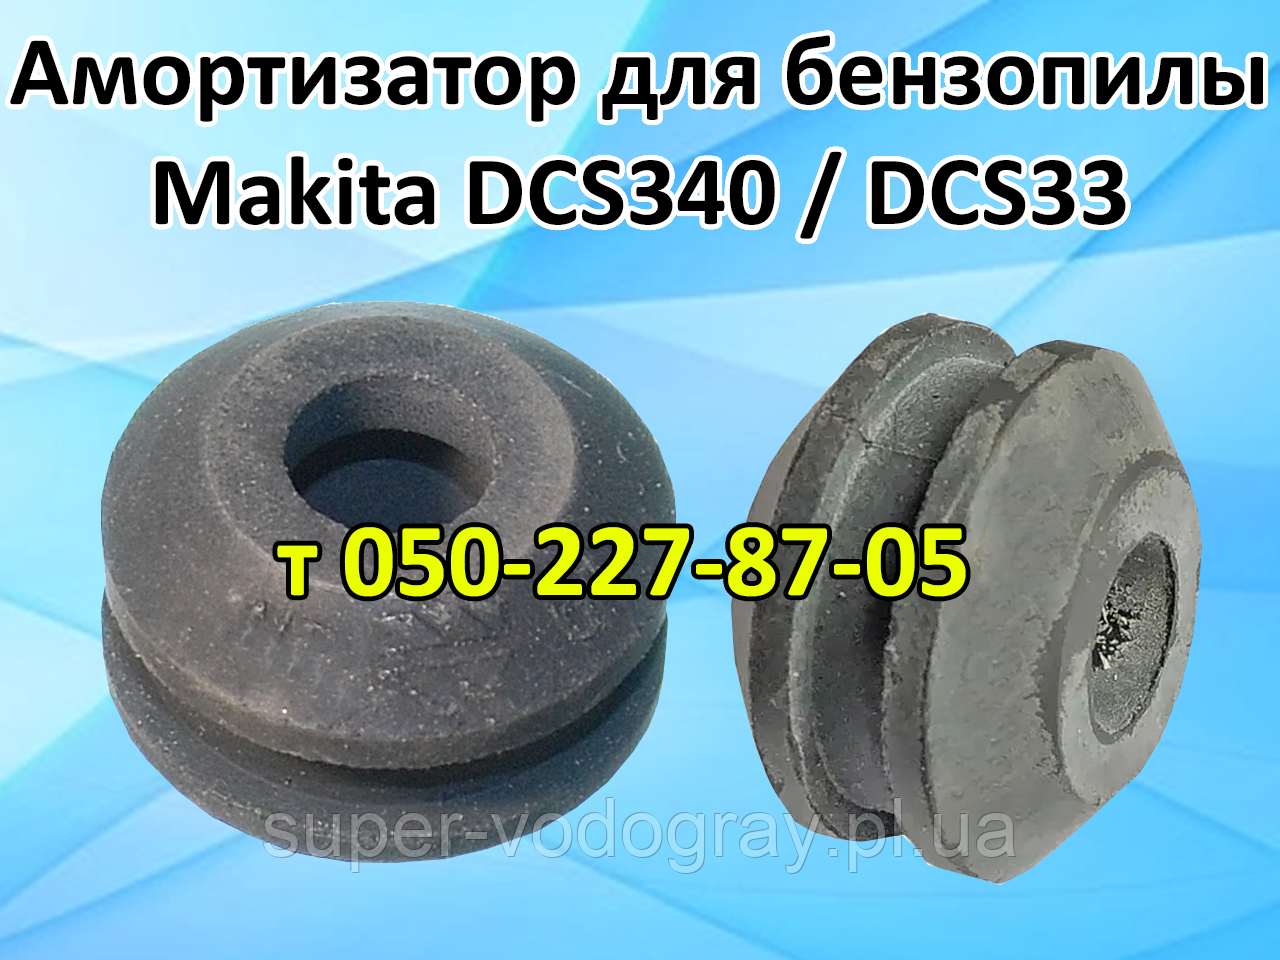 Оливонасос для бензопили Makita DCS 34, DCS 4610